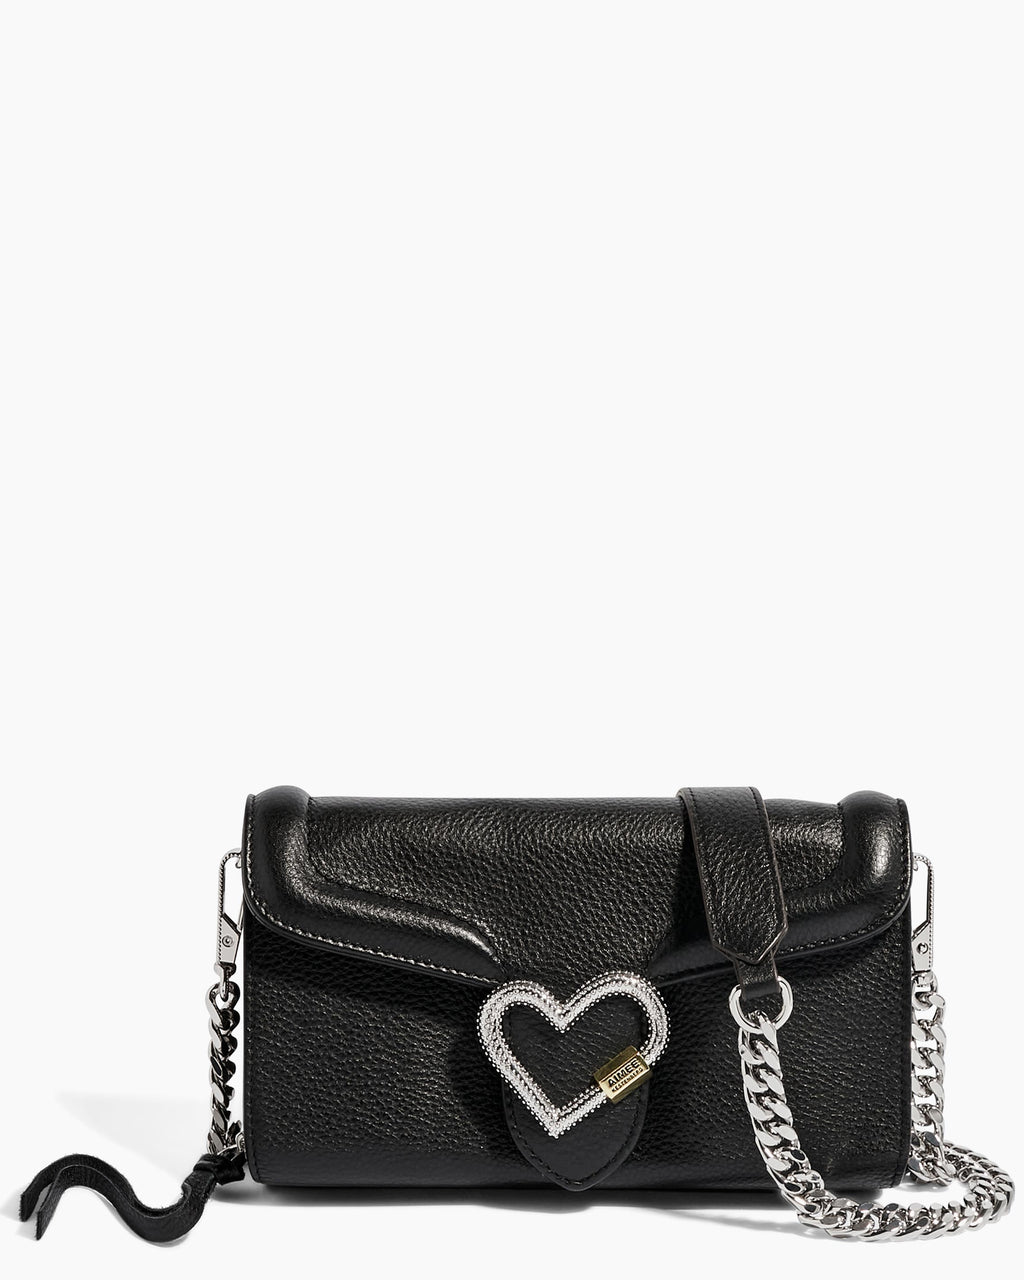 Lovers Lane Black Wallet On A Chain | Aimee Kestenberg